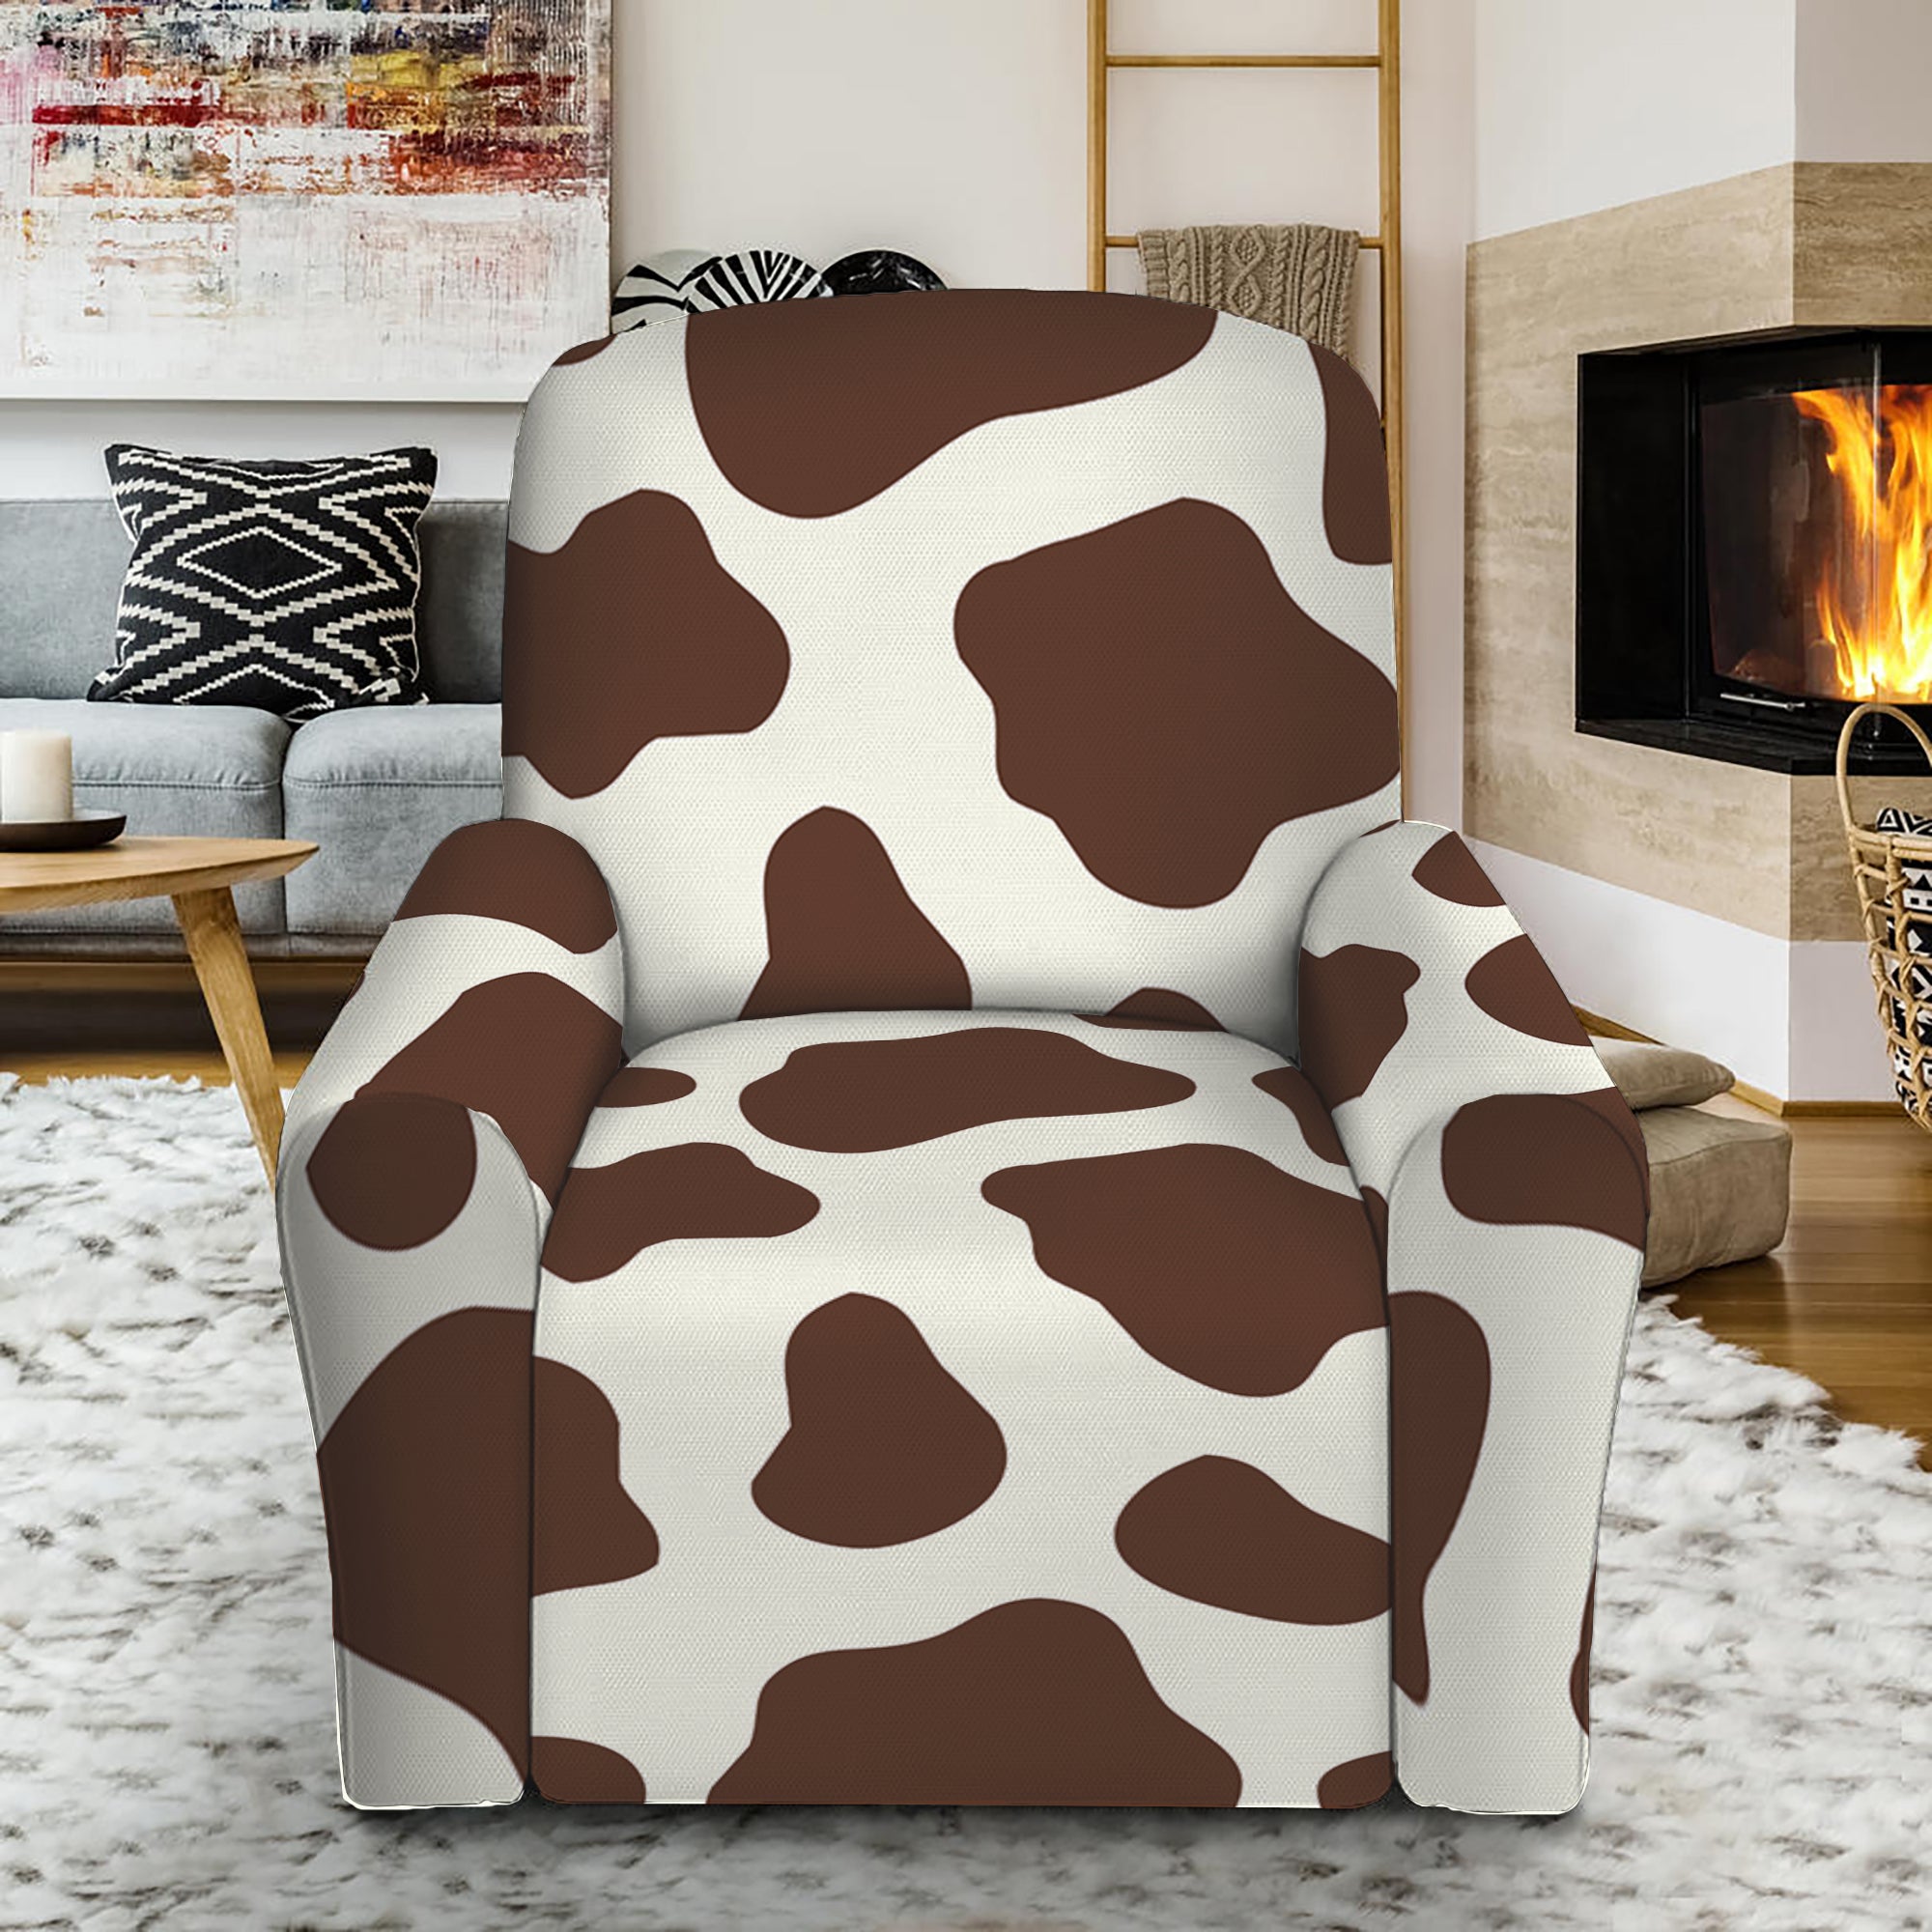 cow print recliner